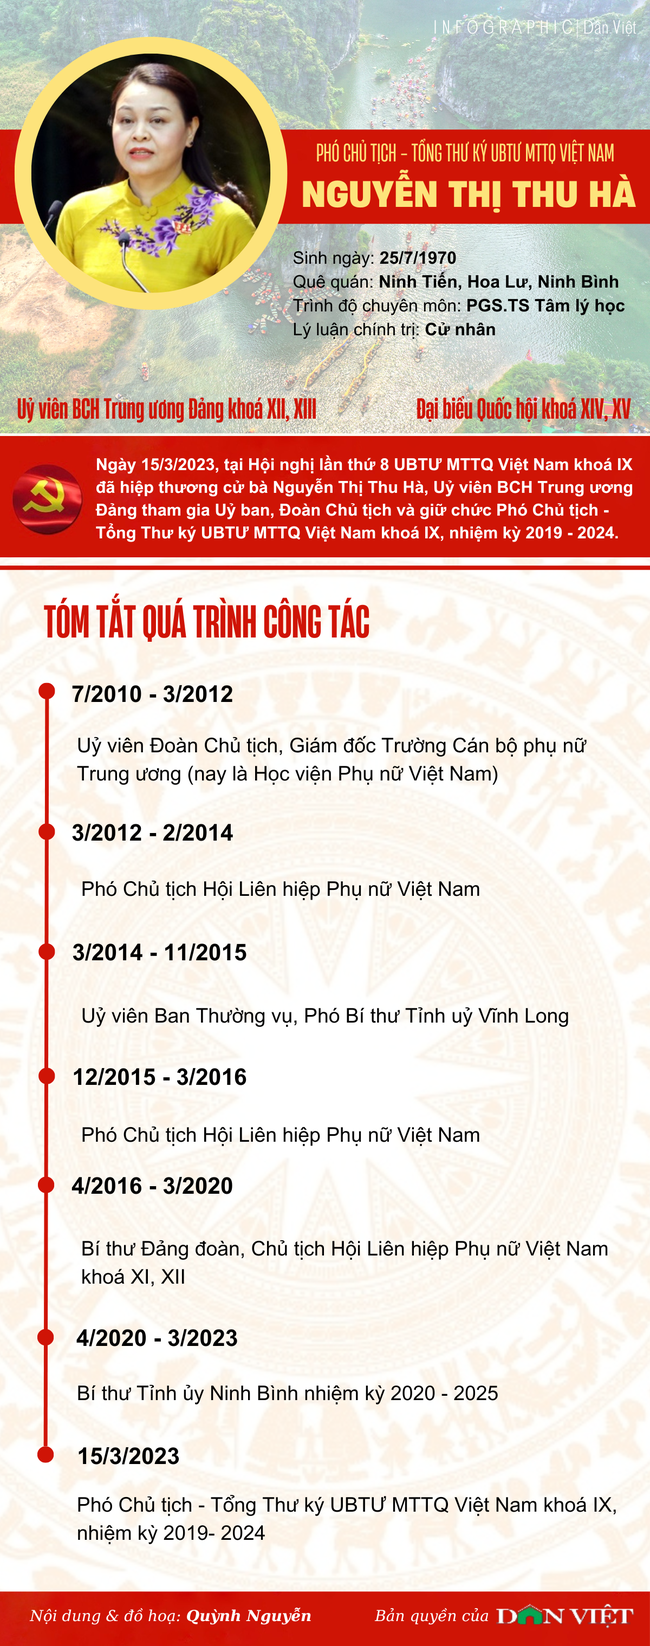 Infographic: Chân dung nữ Phó Chủ tịch Ủy ban Trung ương MTTQ Việt Nam Nguyễn Thị Thu Hà - Ảnh 1.